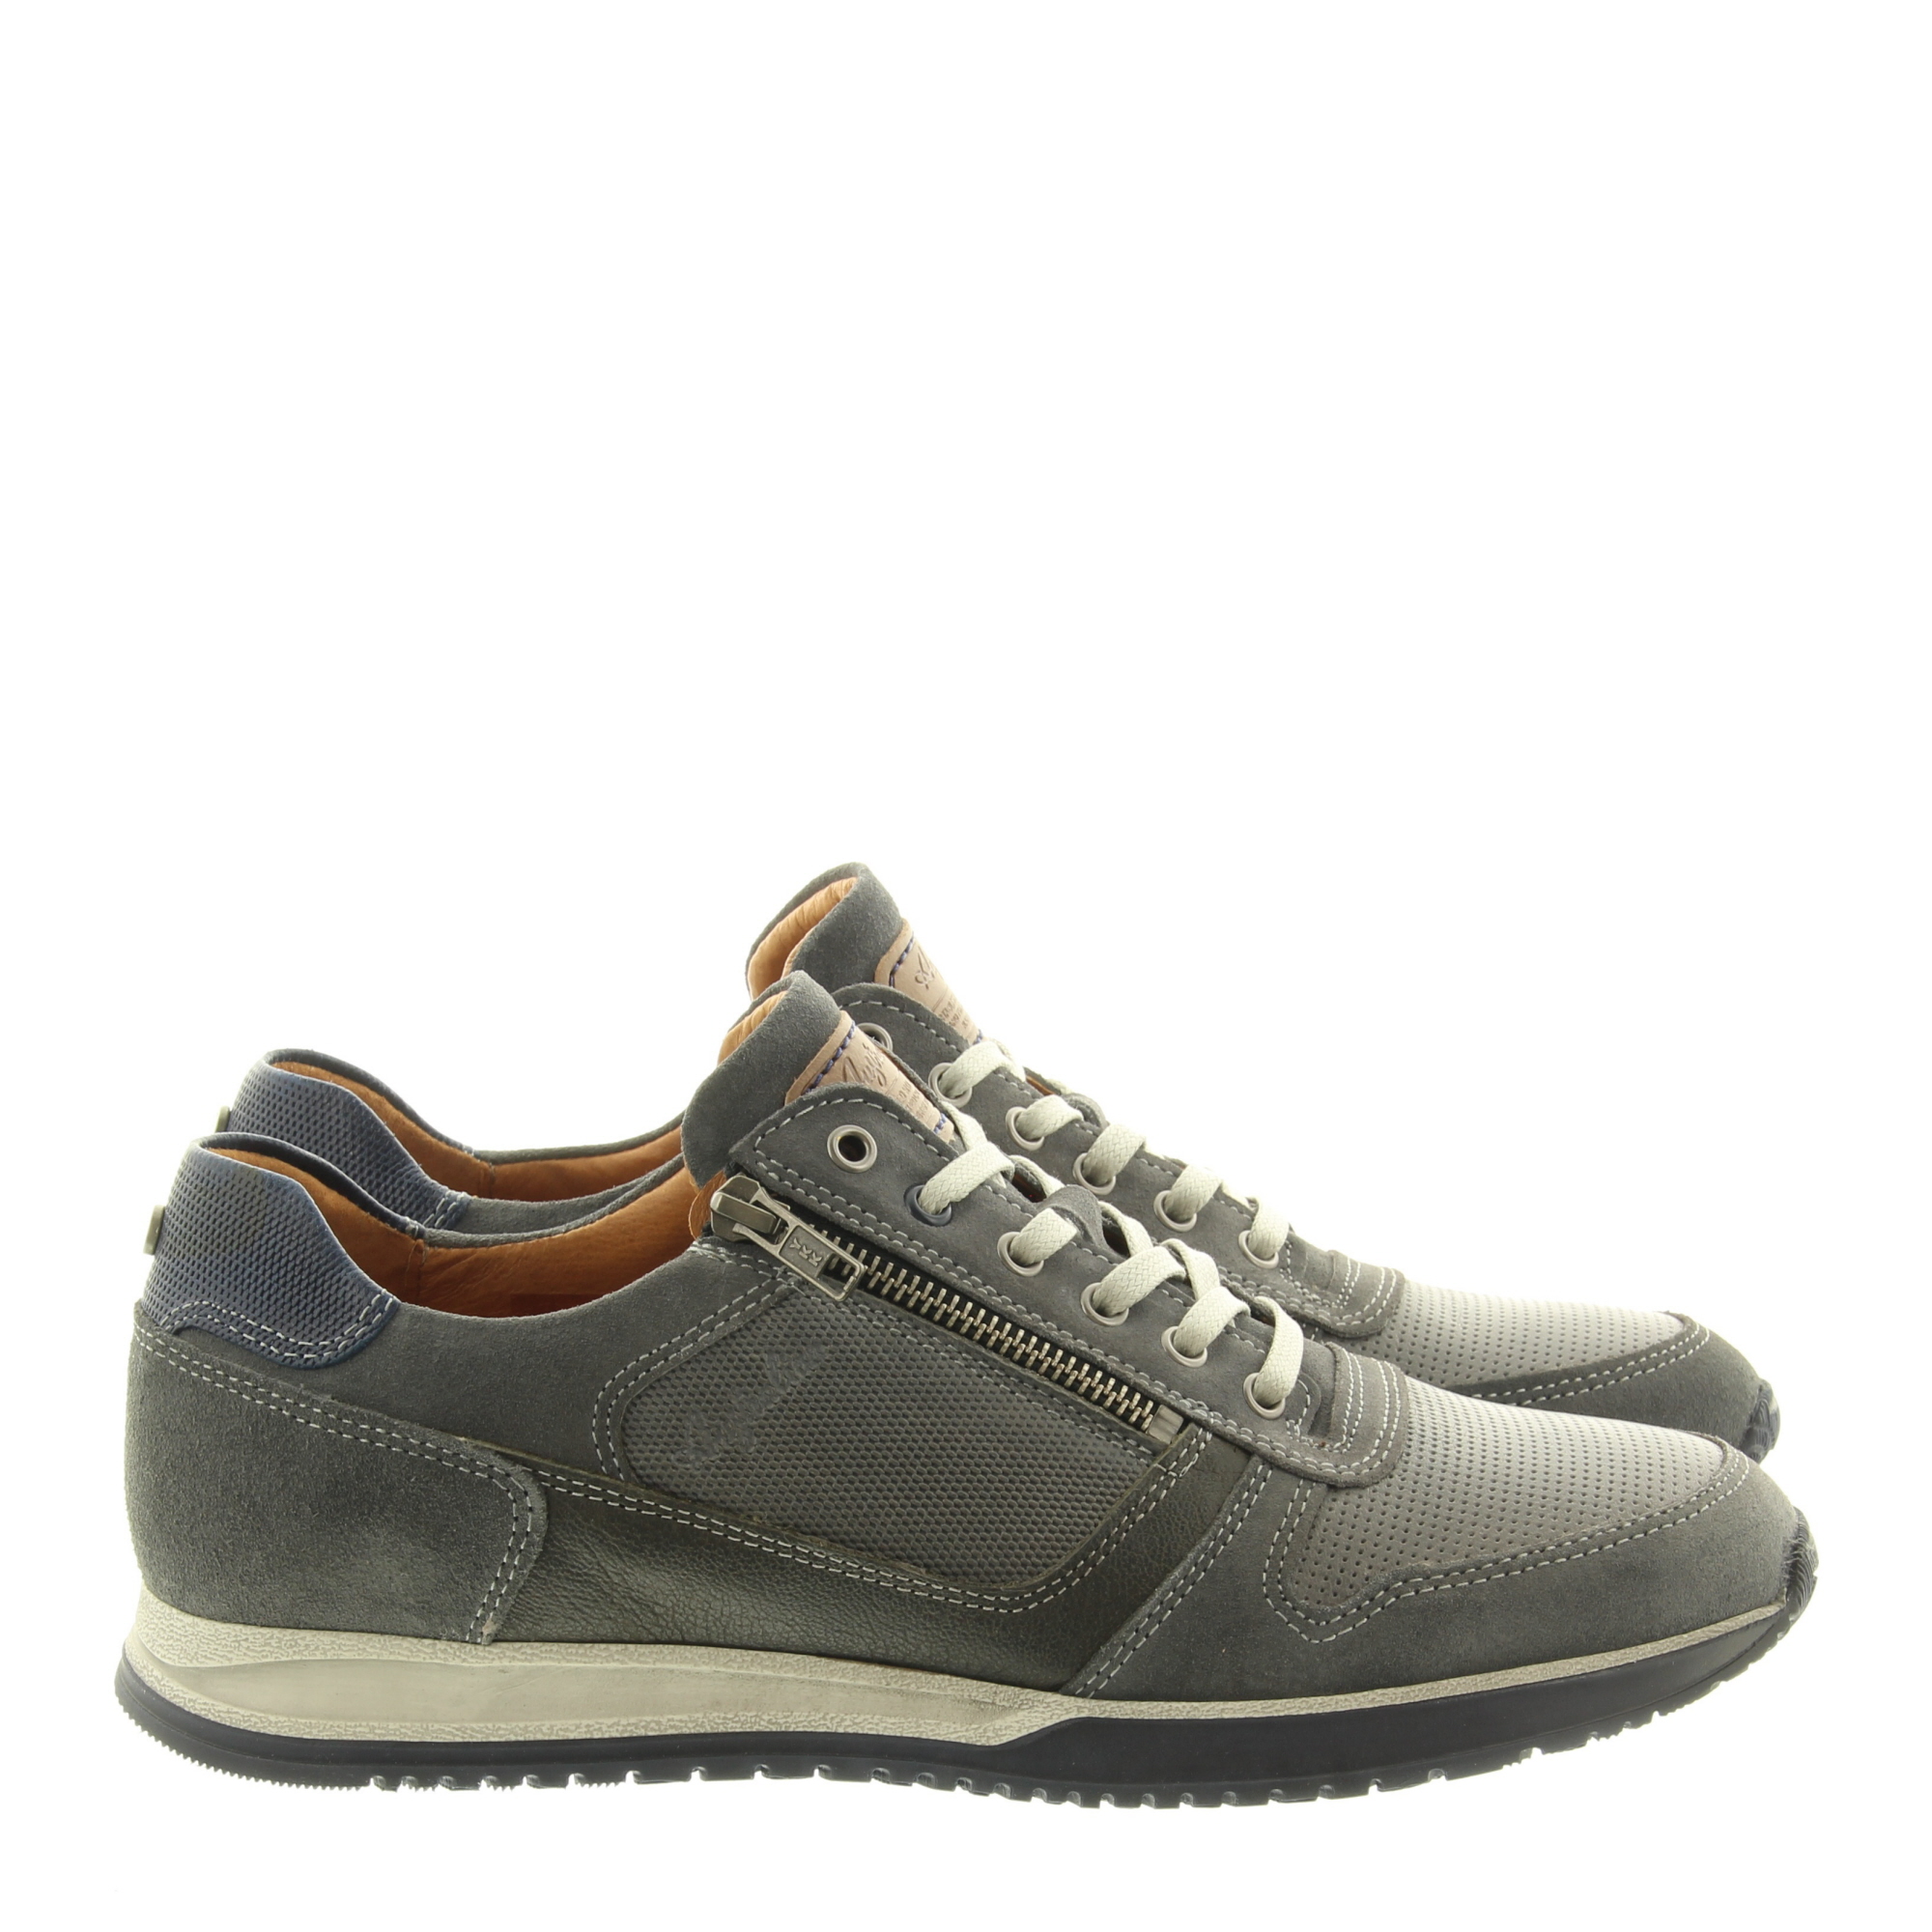 Australian Footwear Browning 15.1473.01 K00 Grey